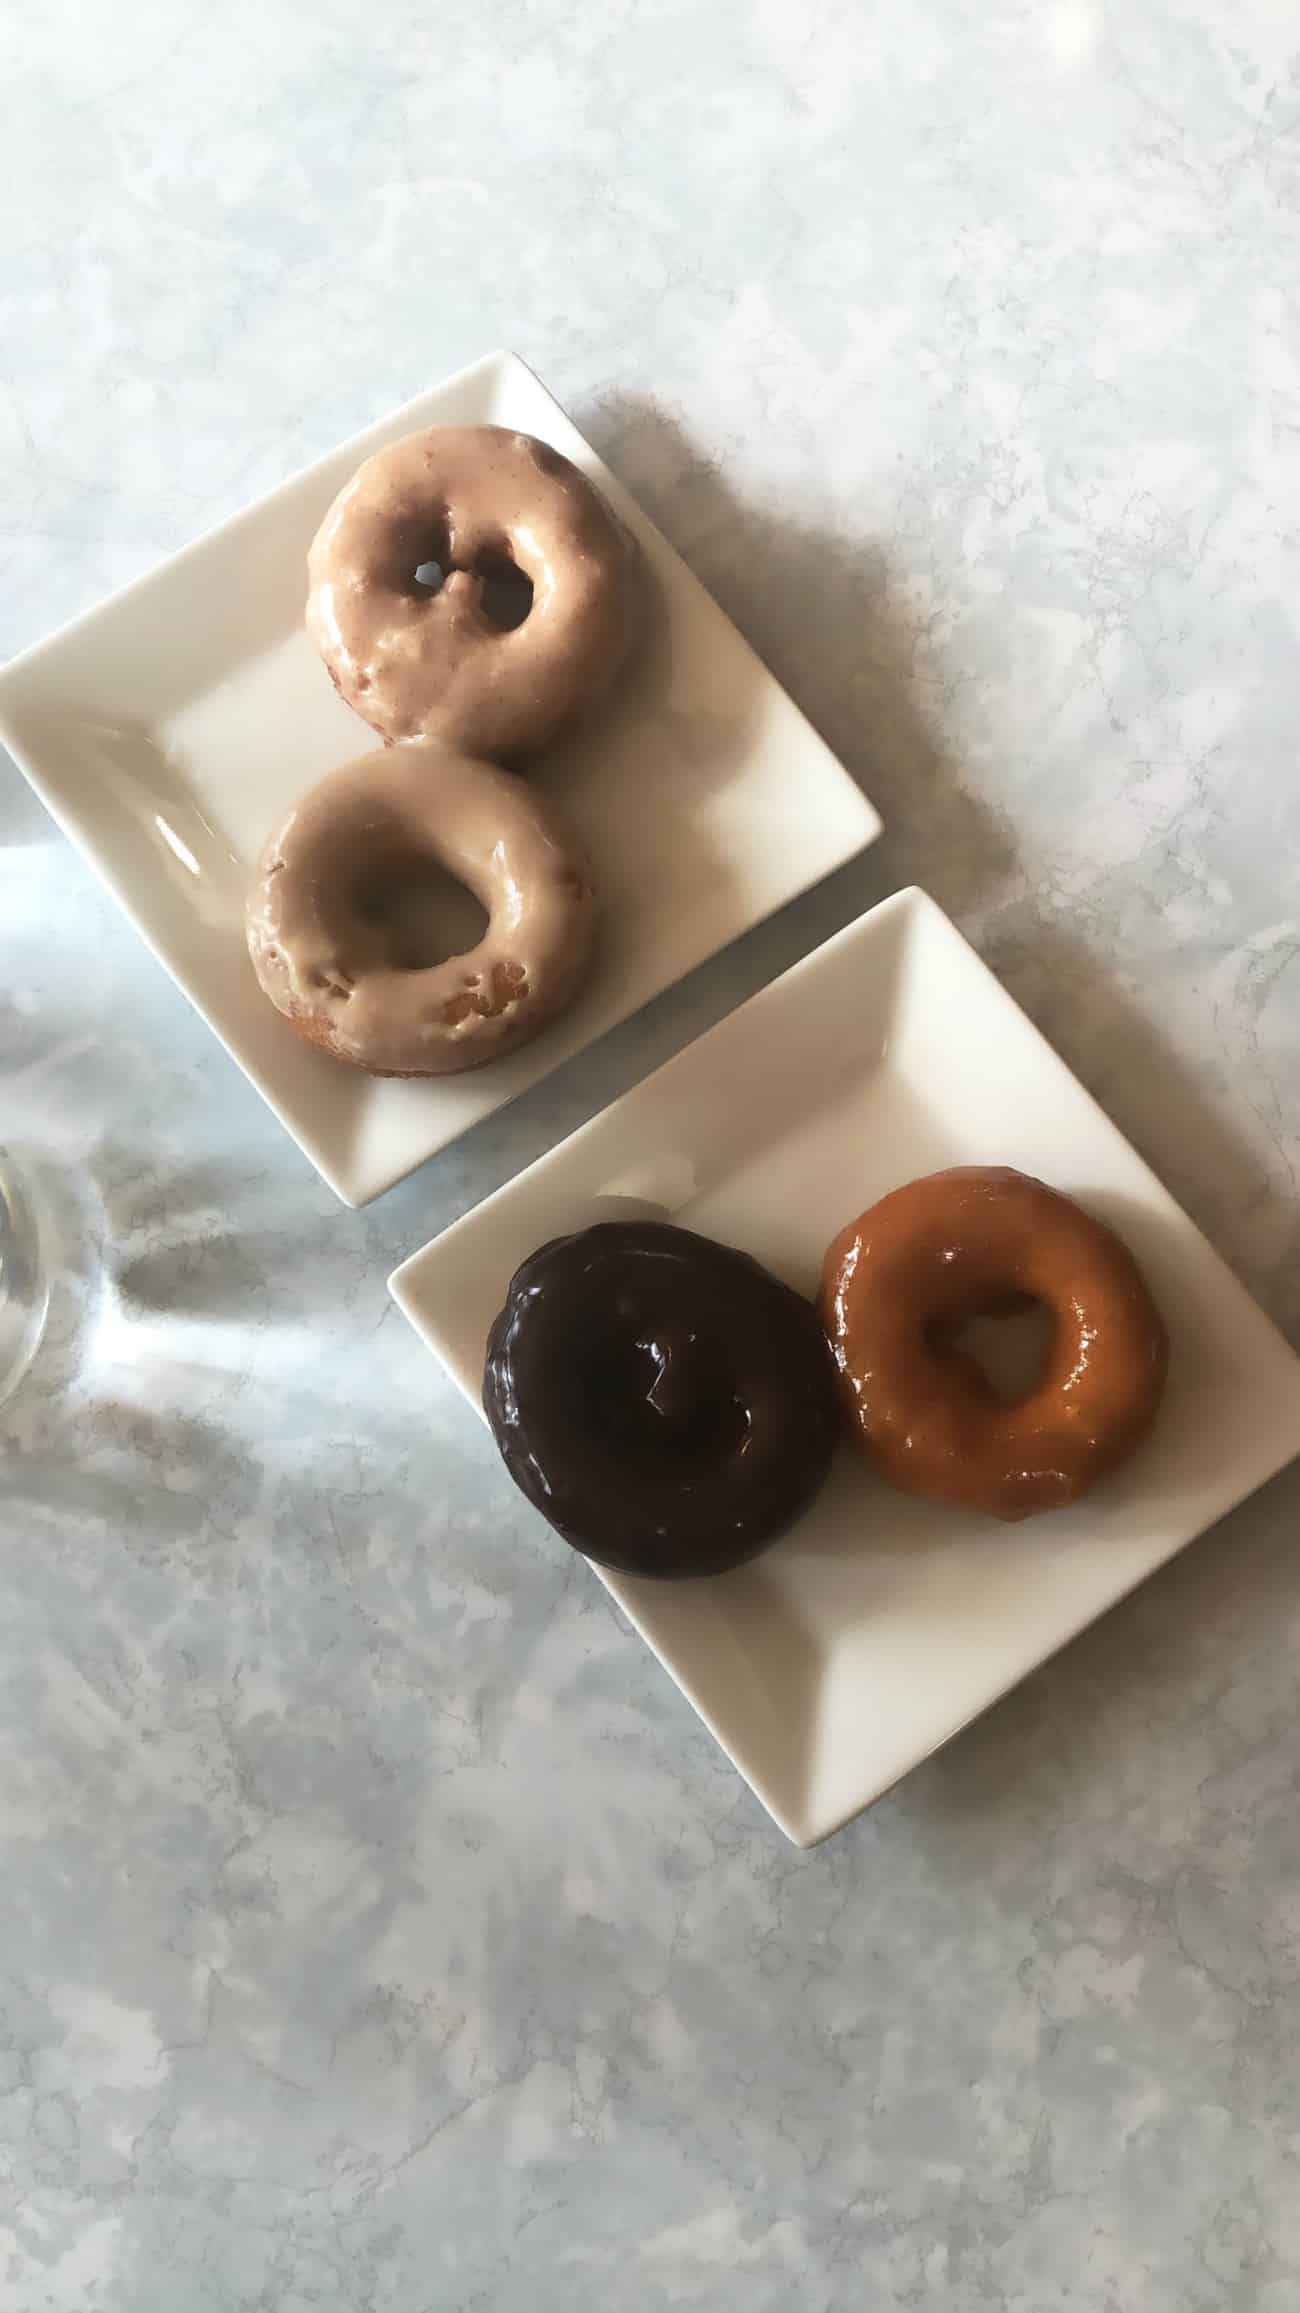 Glazed donuts